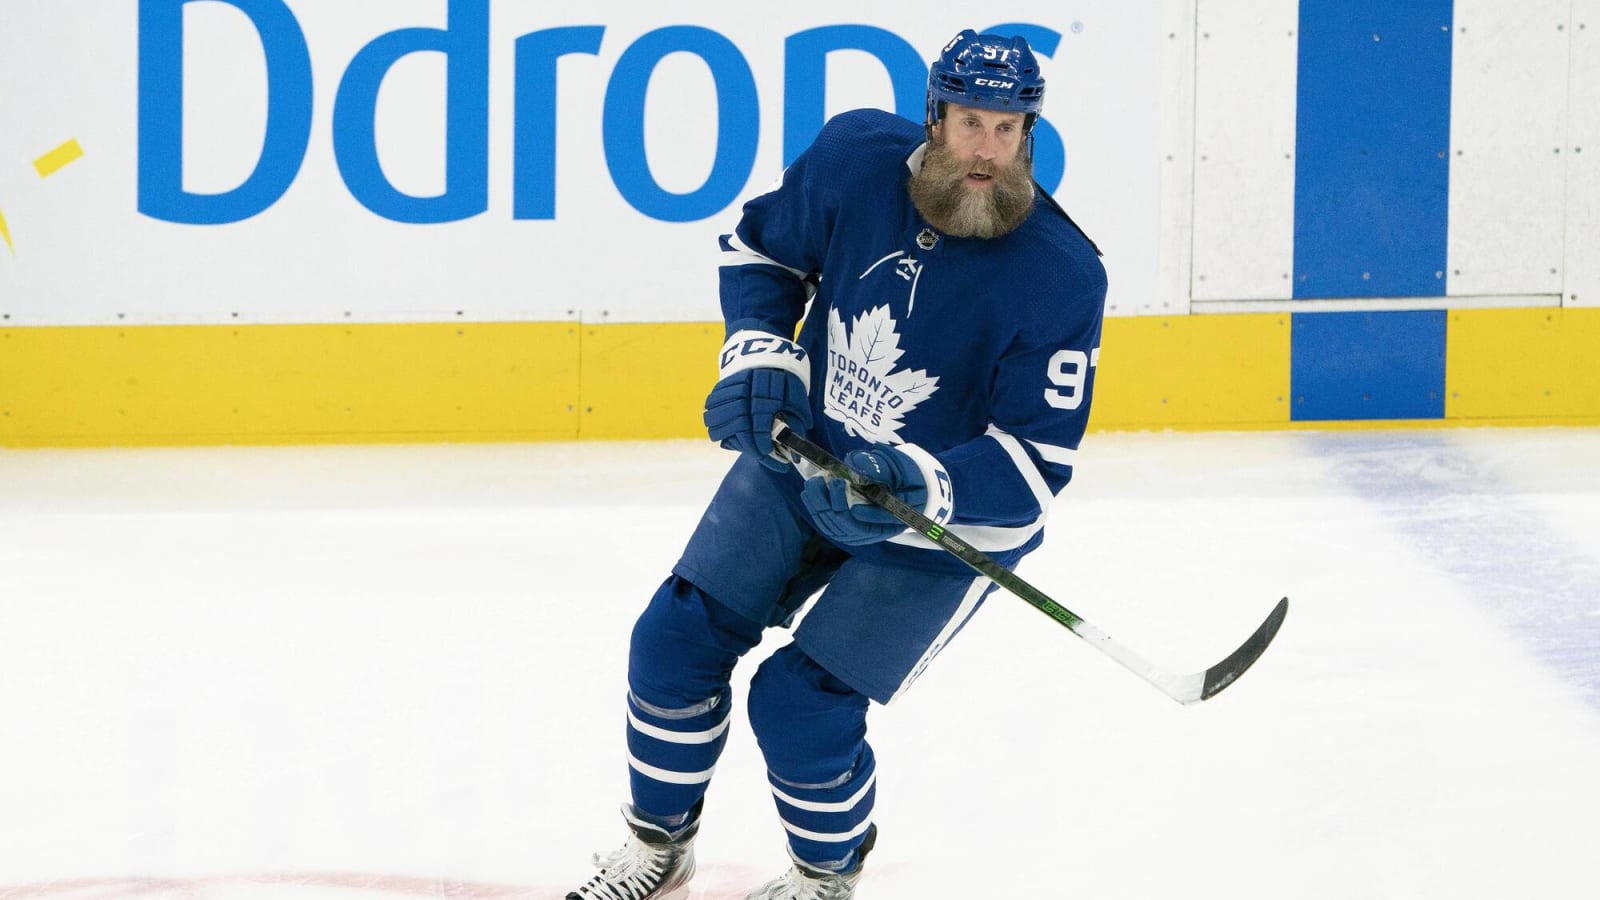 Former Leafs forward Joe Thornton has retired from the NHL